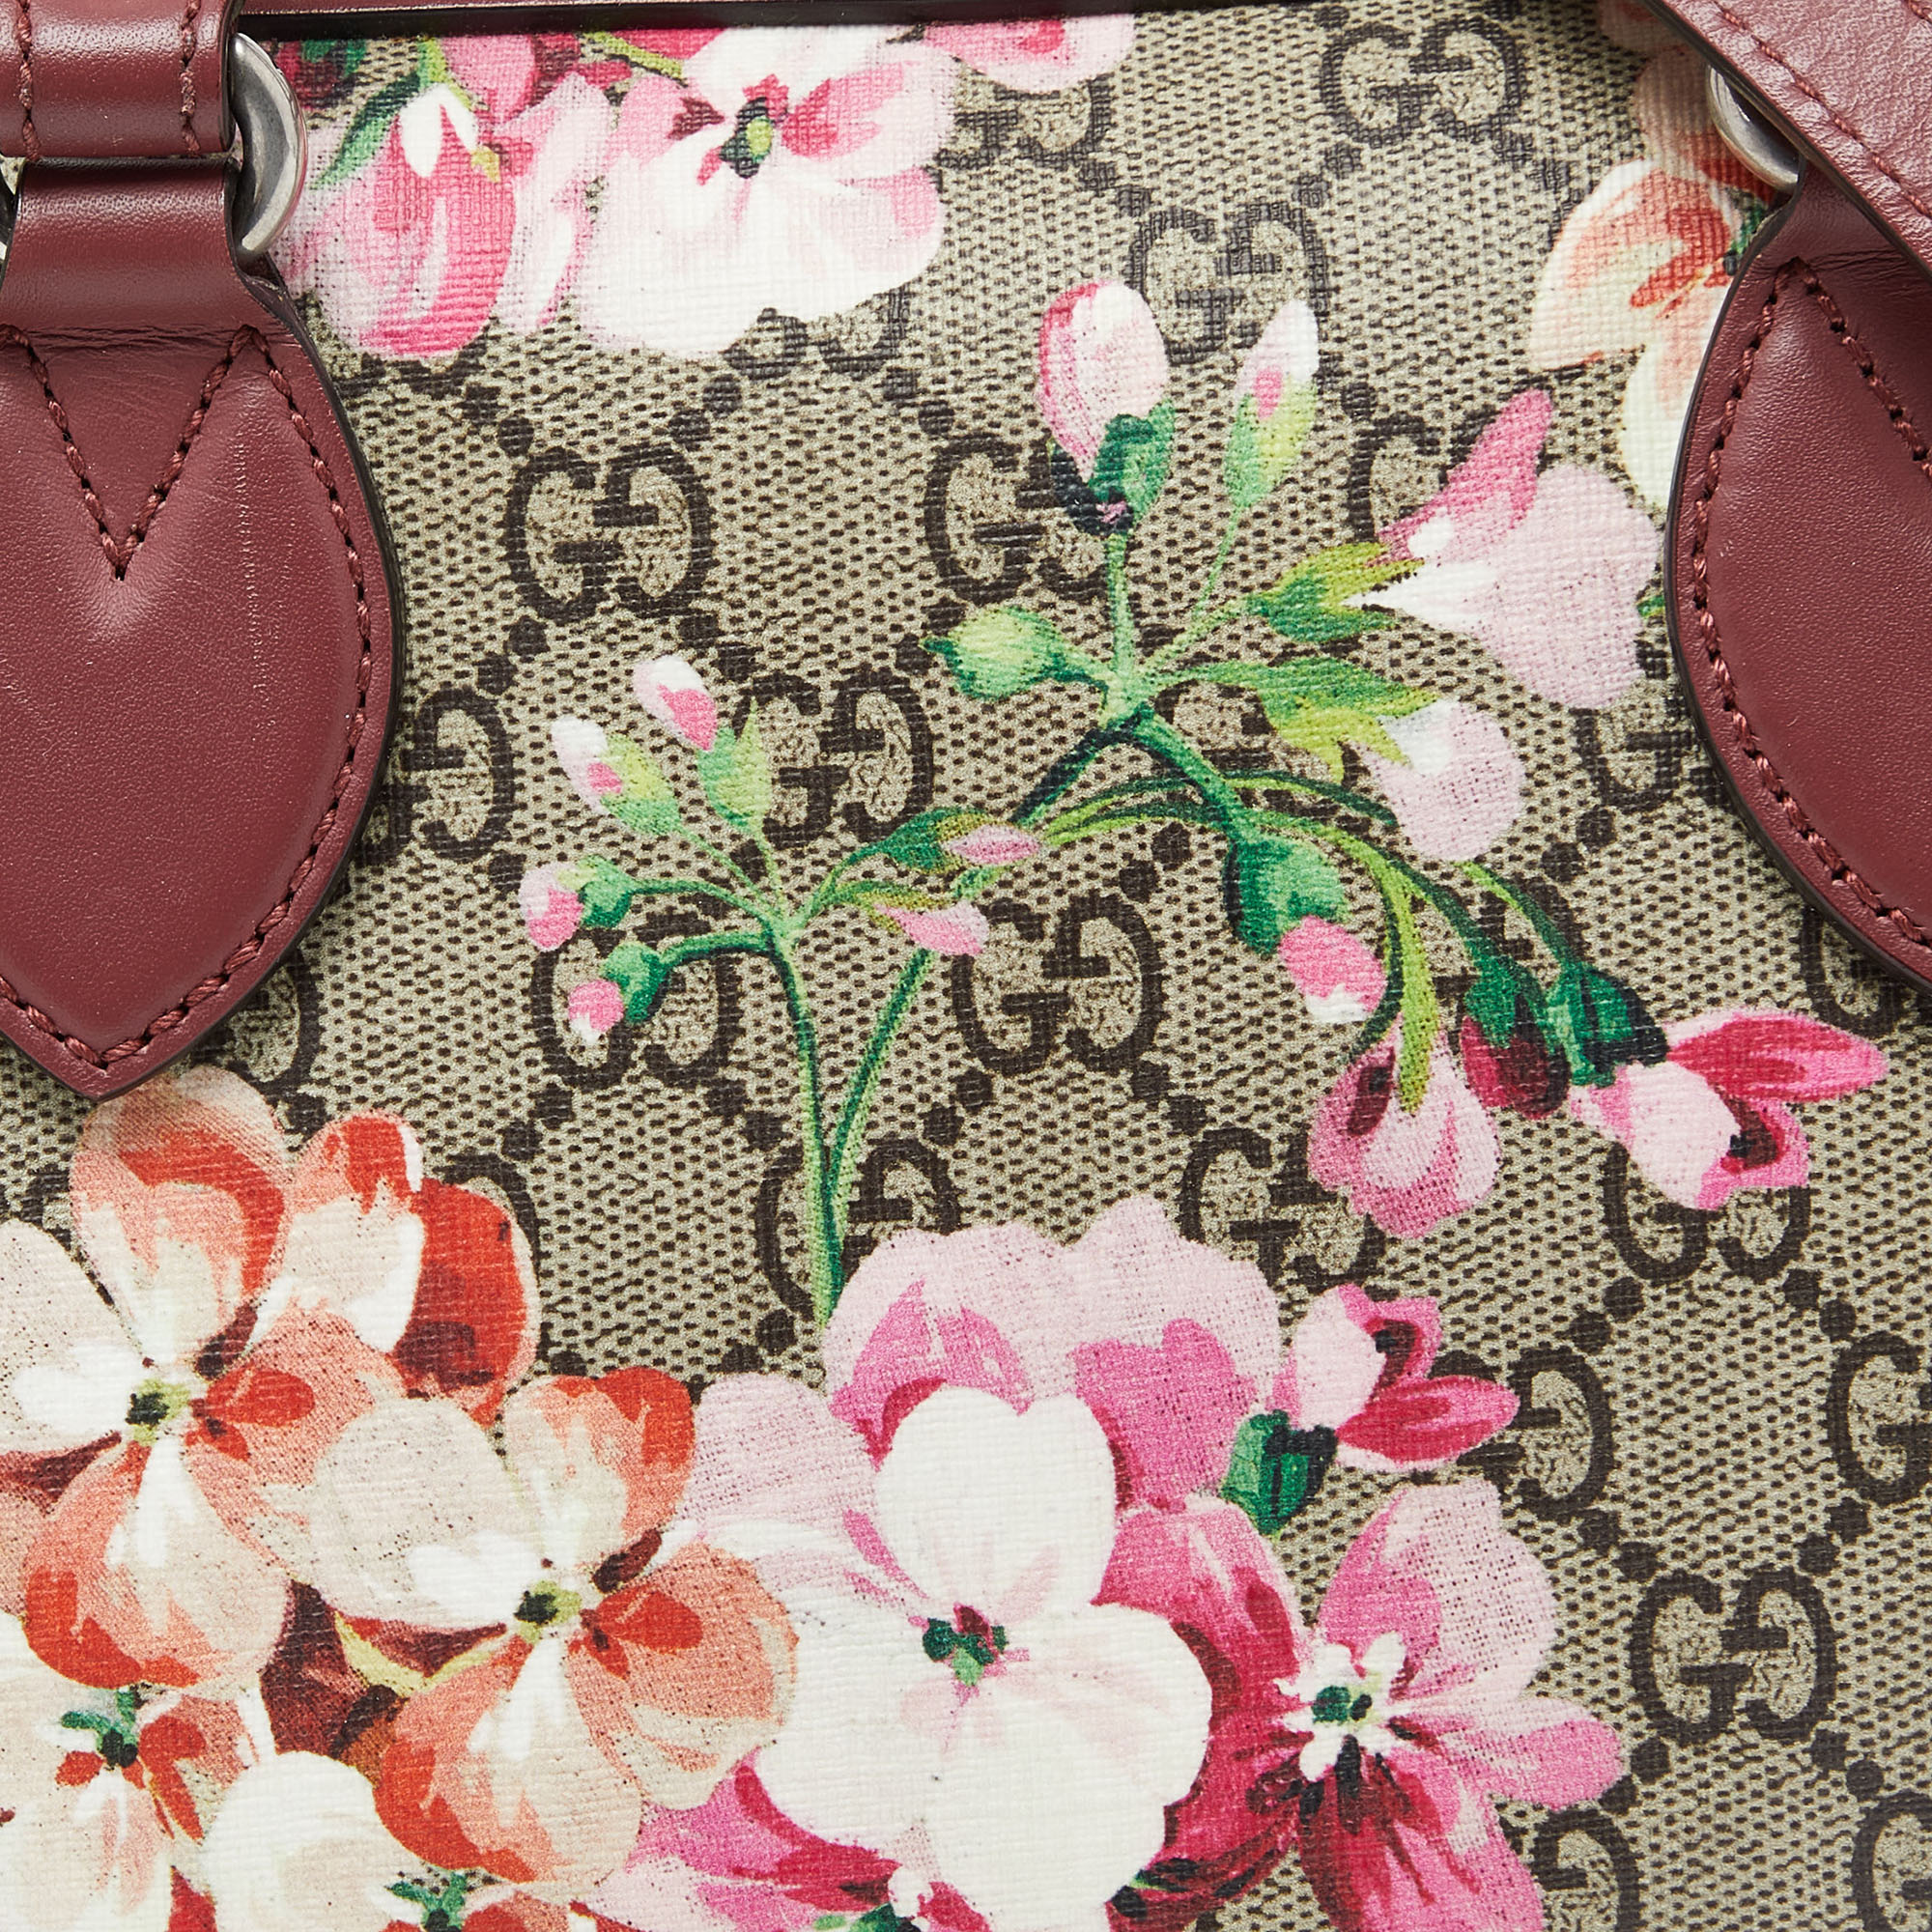 Gucci Multicolor GG Supreme Canvas And Leather Small Blooms Boston Bag